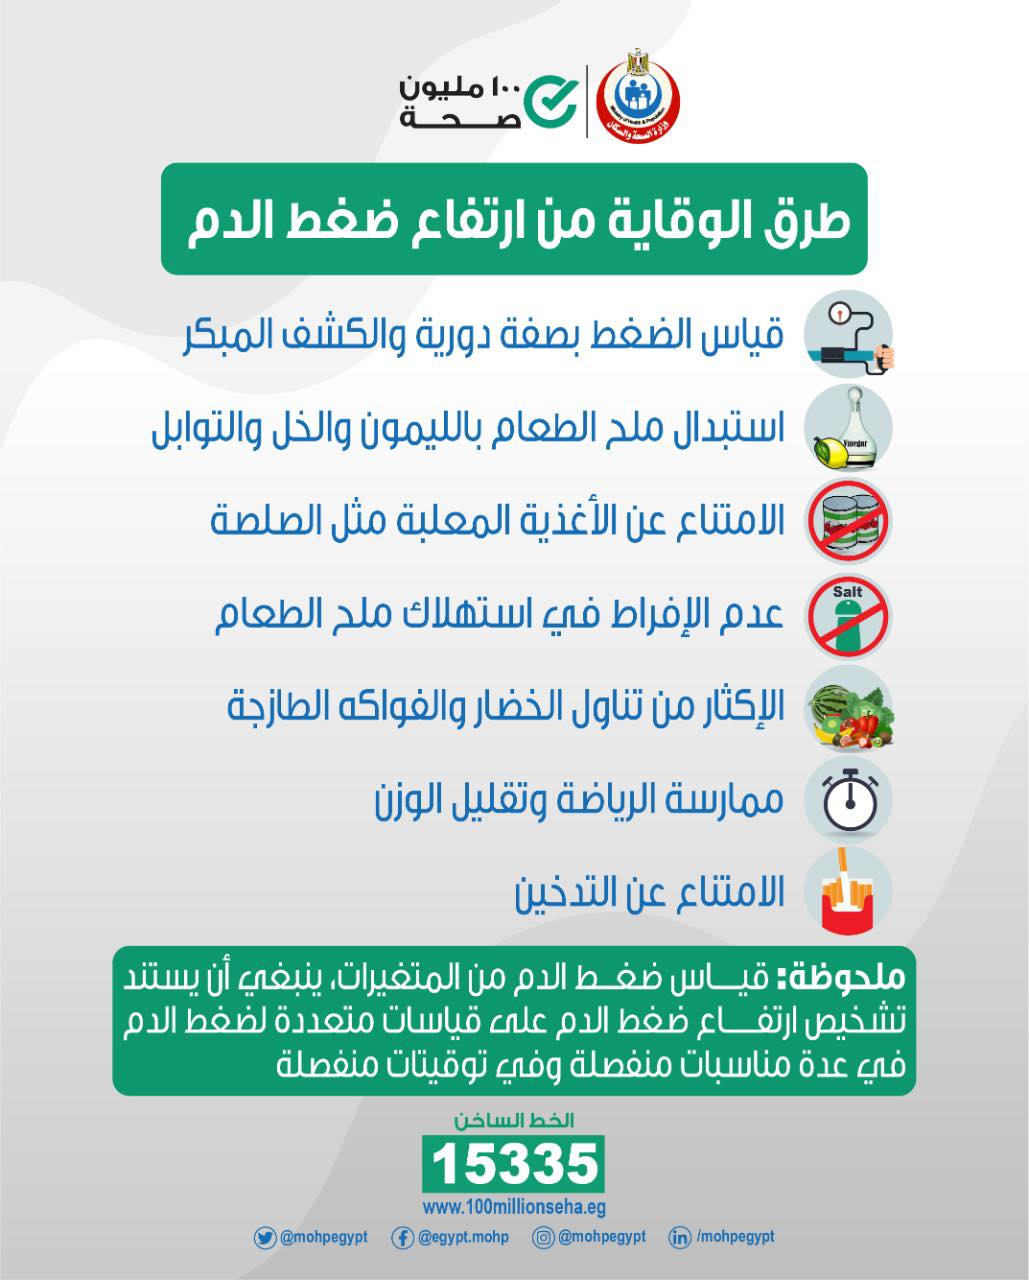 وزارة الصحة تنصح المواطنين بـ 7 إجراءات للوقاية من ارتفاع ضغط الدم 6